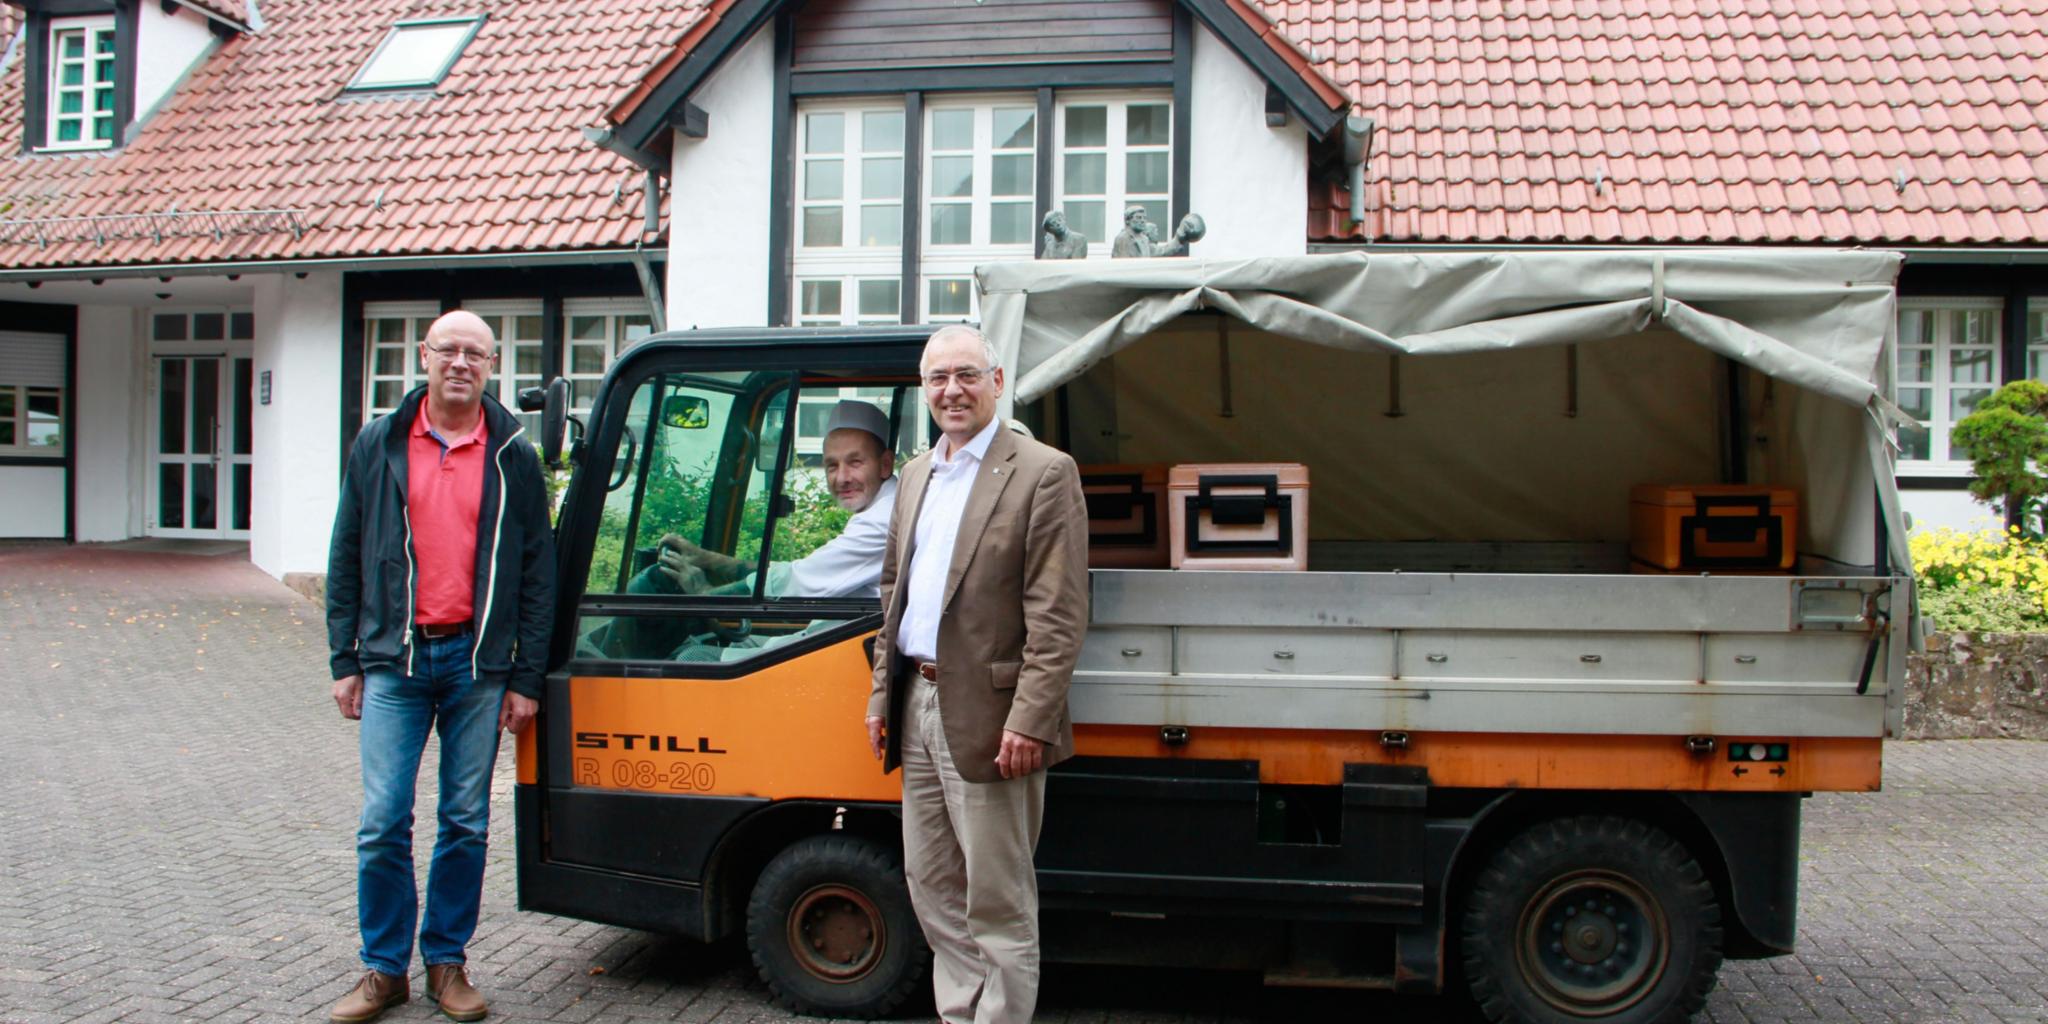 Der technische Leiter Dietmar Bender (links) und der Hausobere Werner Schmitz (rechts) setzen auf Umweltschutz und Nachhaltigkeit. Dazu gehört unter anderem eine Flotte von Elektrofahrzeugen auf dem Schönfelderhof.